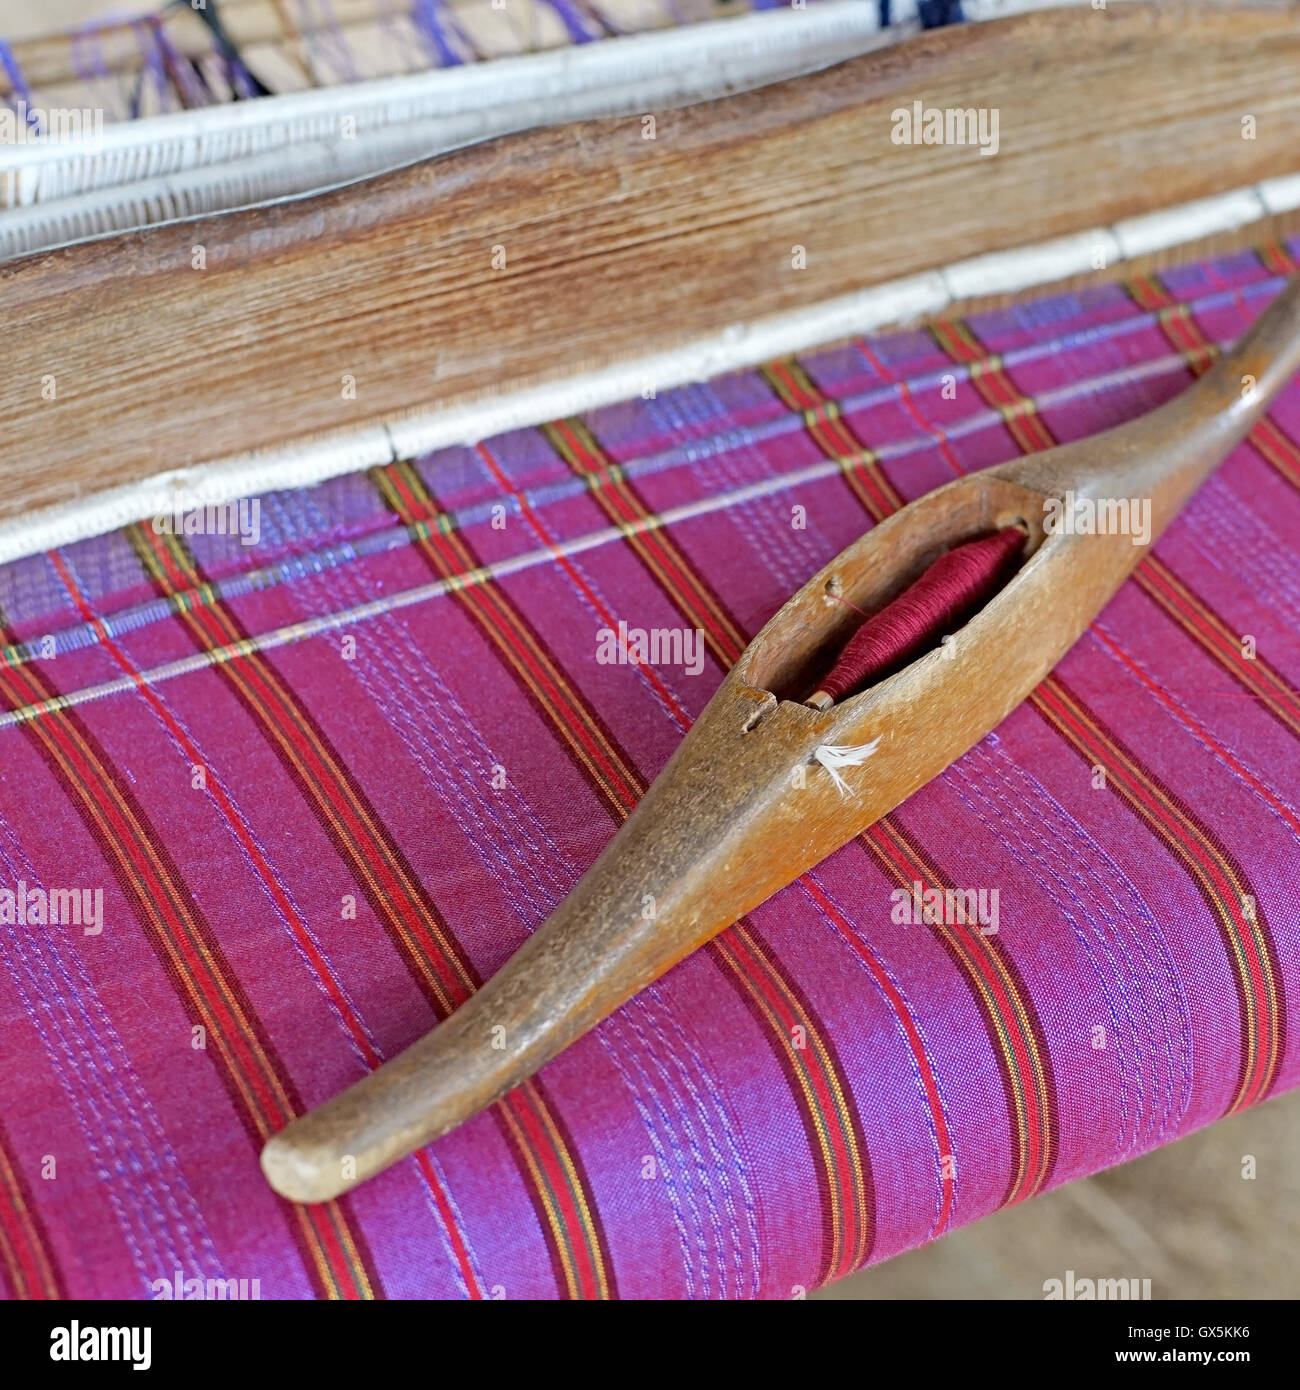 Bobine en bois de la soie sur métier à tisser, le tissage traditionnel de la soie thaïlandaise Banque D'Images